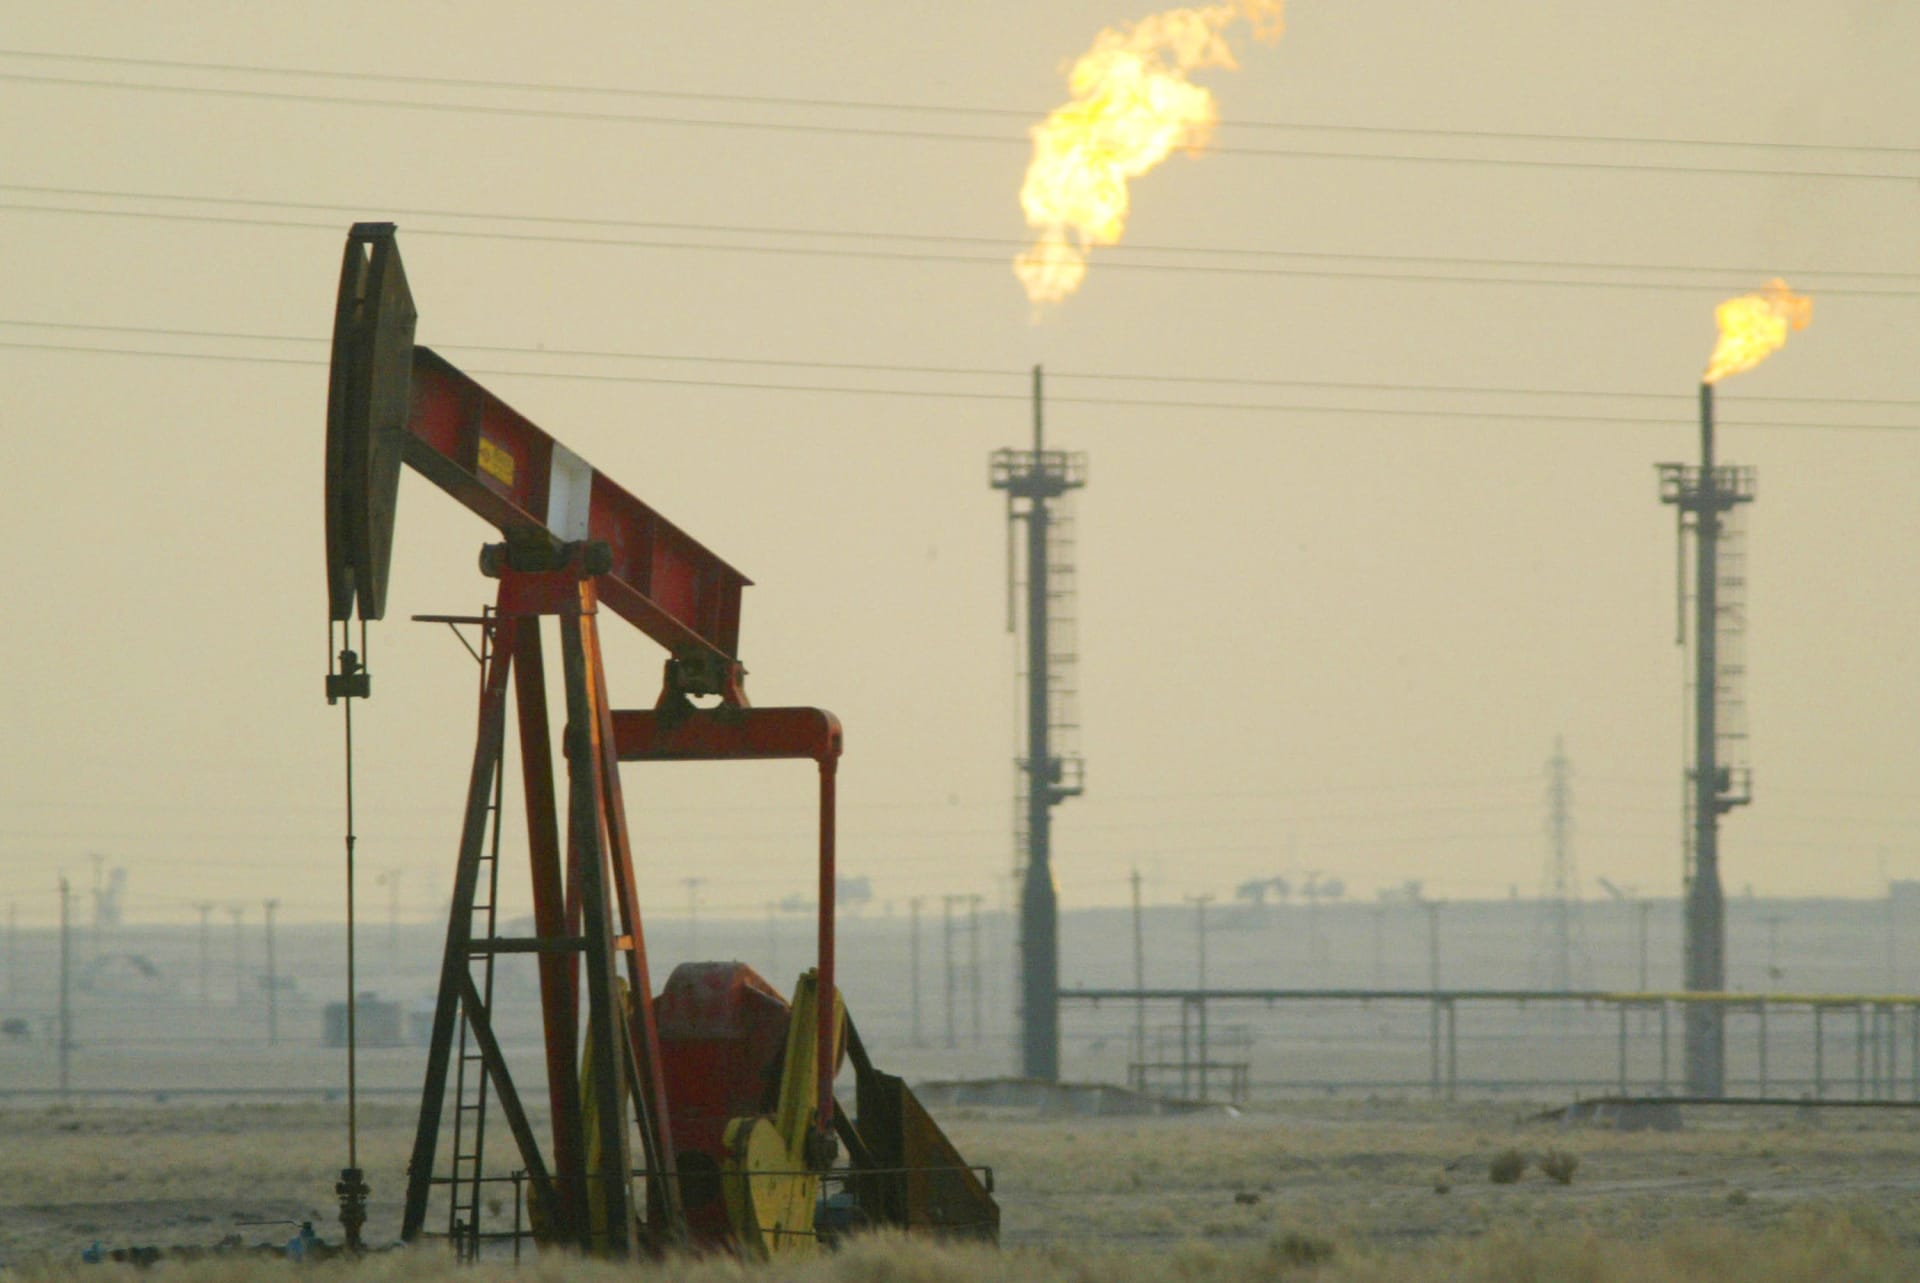 أمر ملكي سعودي: فرض ضريبة دخل على شركات قطاع النفط في المملكة بناءً على حجم الاستثمارات